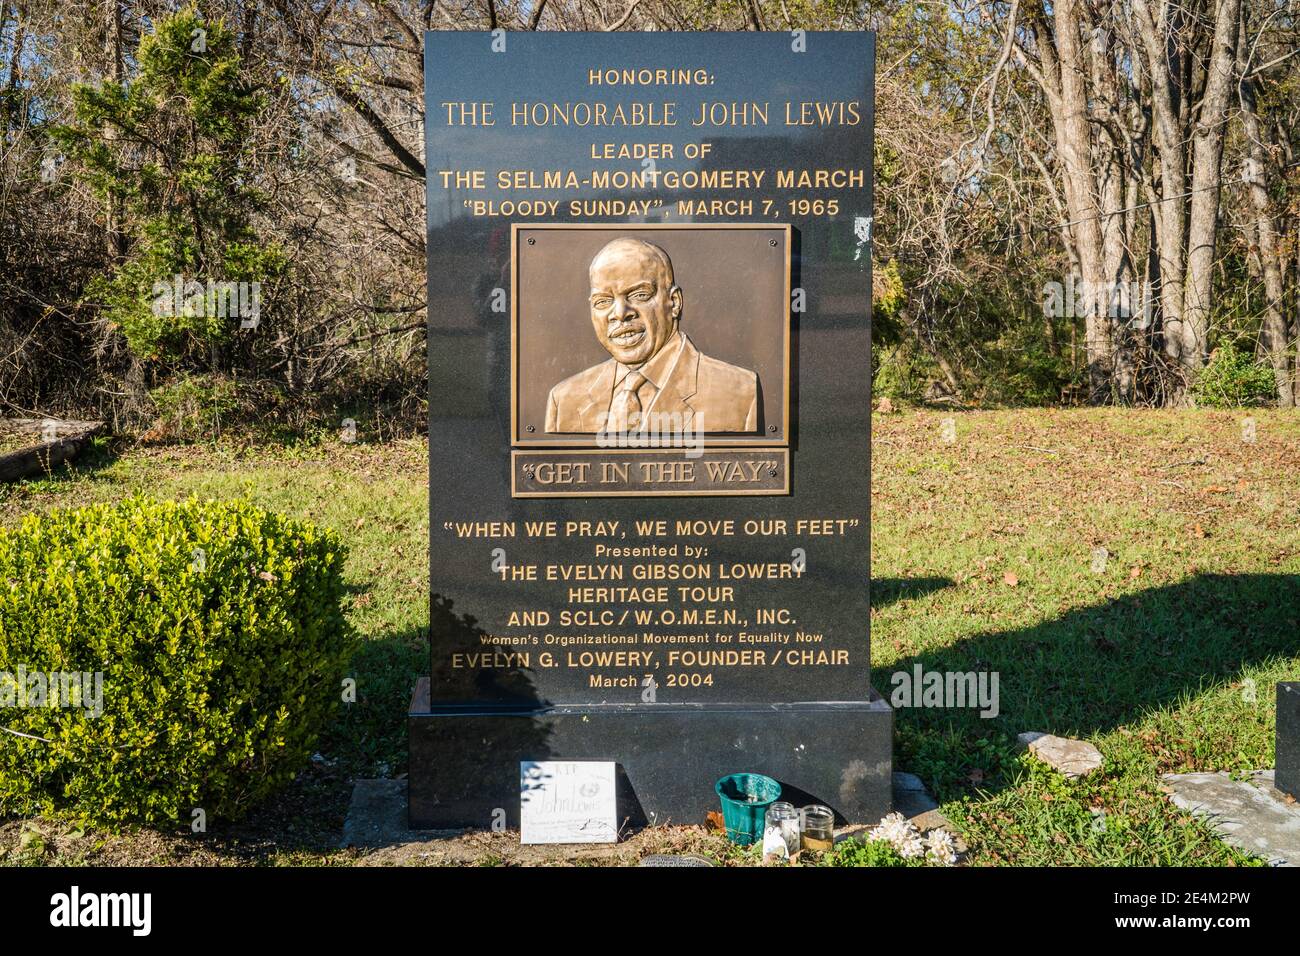 Monumento in onore del leader dei diritti civili John Lewis, che ha marciato da Montgomery a Selma, Alabam, insieme al Dr. Martin Luther King, Jr. Nel 1965. Foto Stock